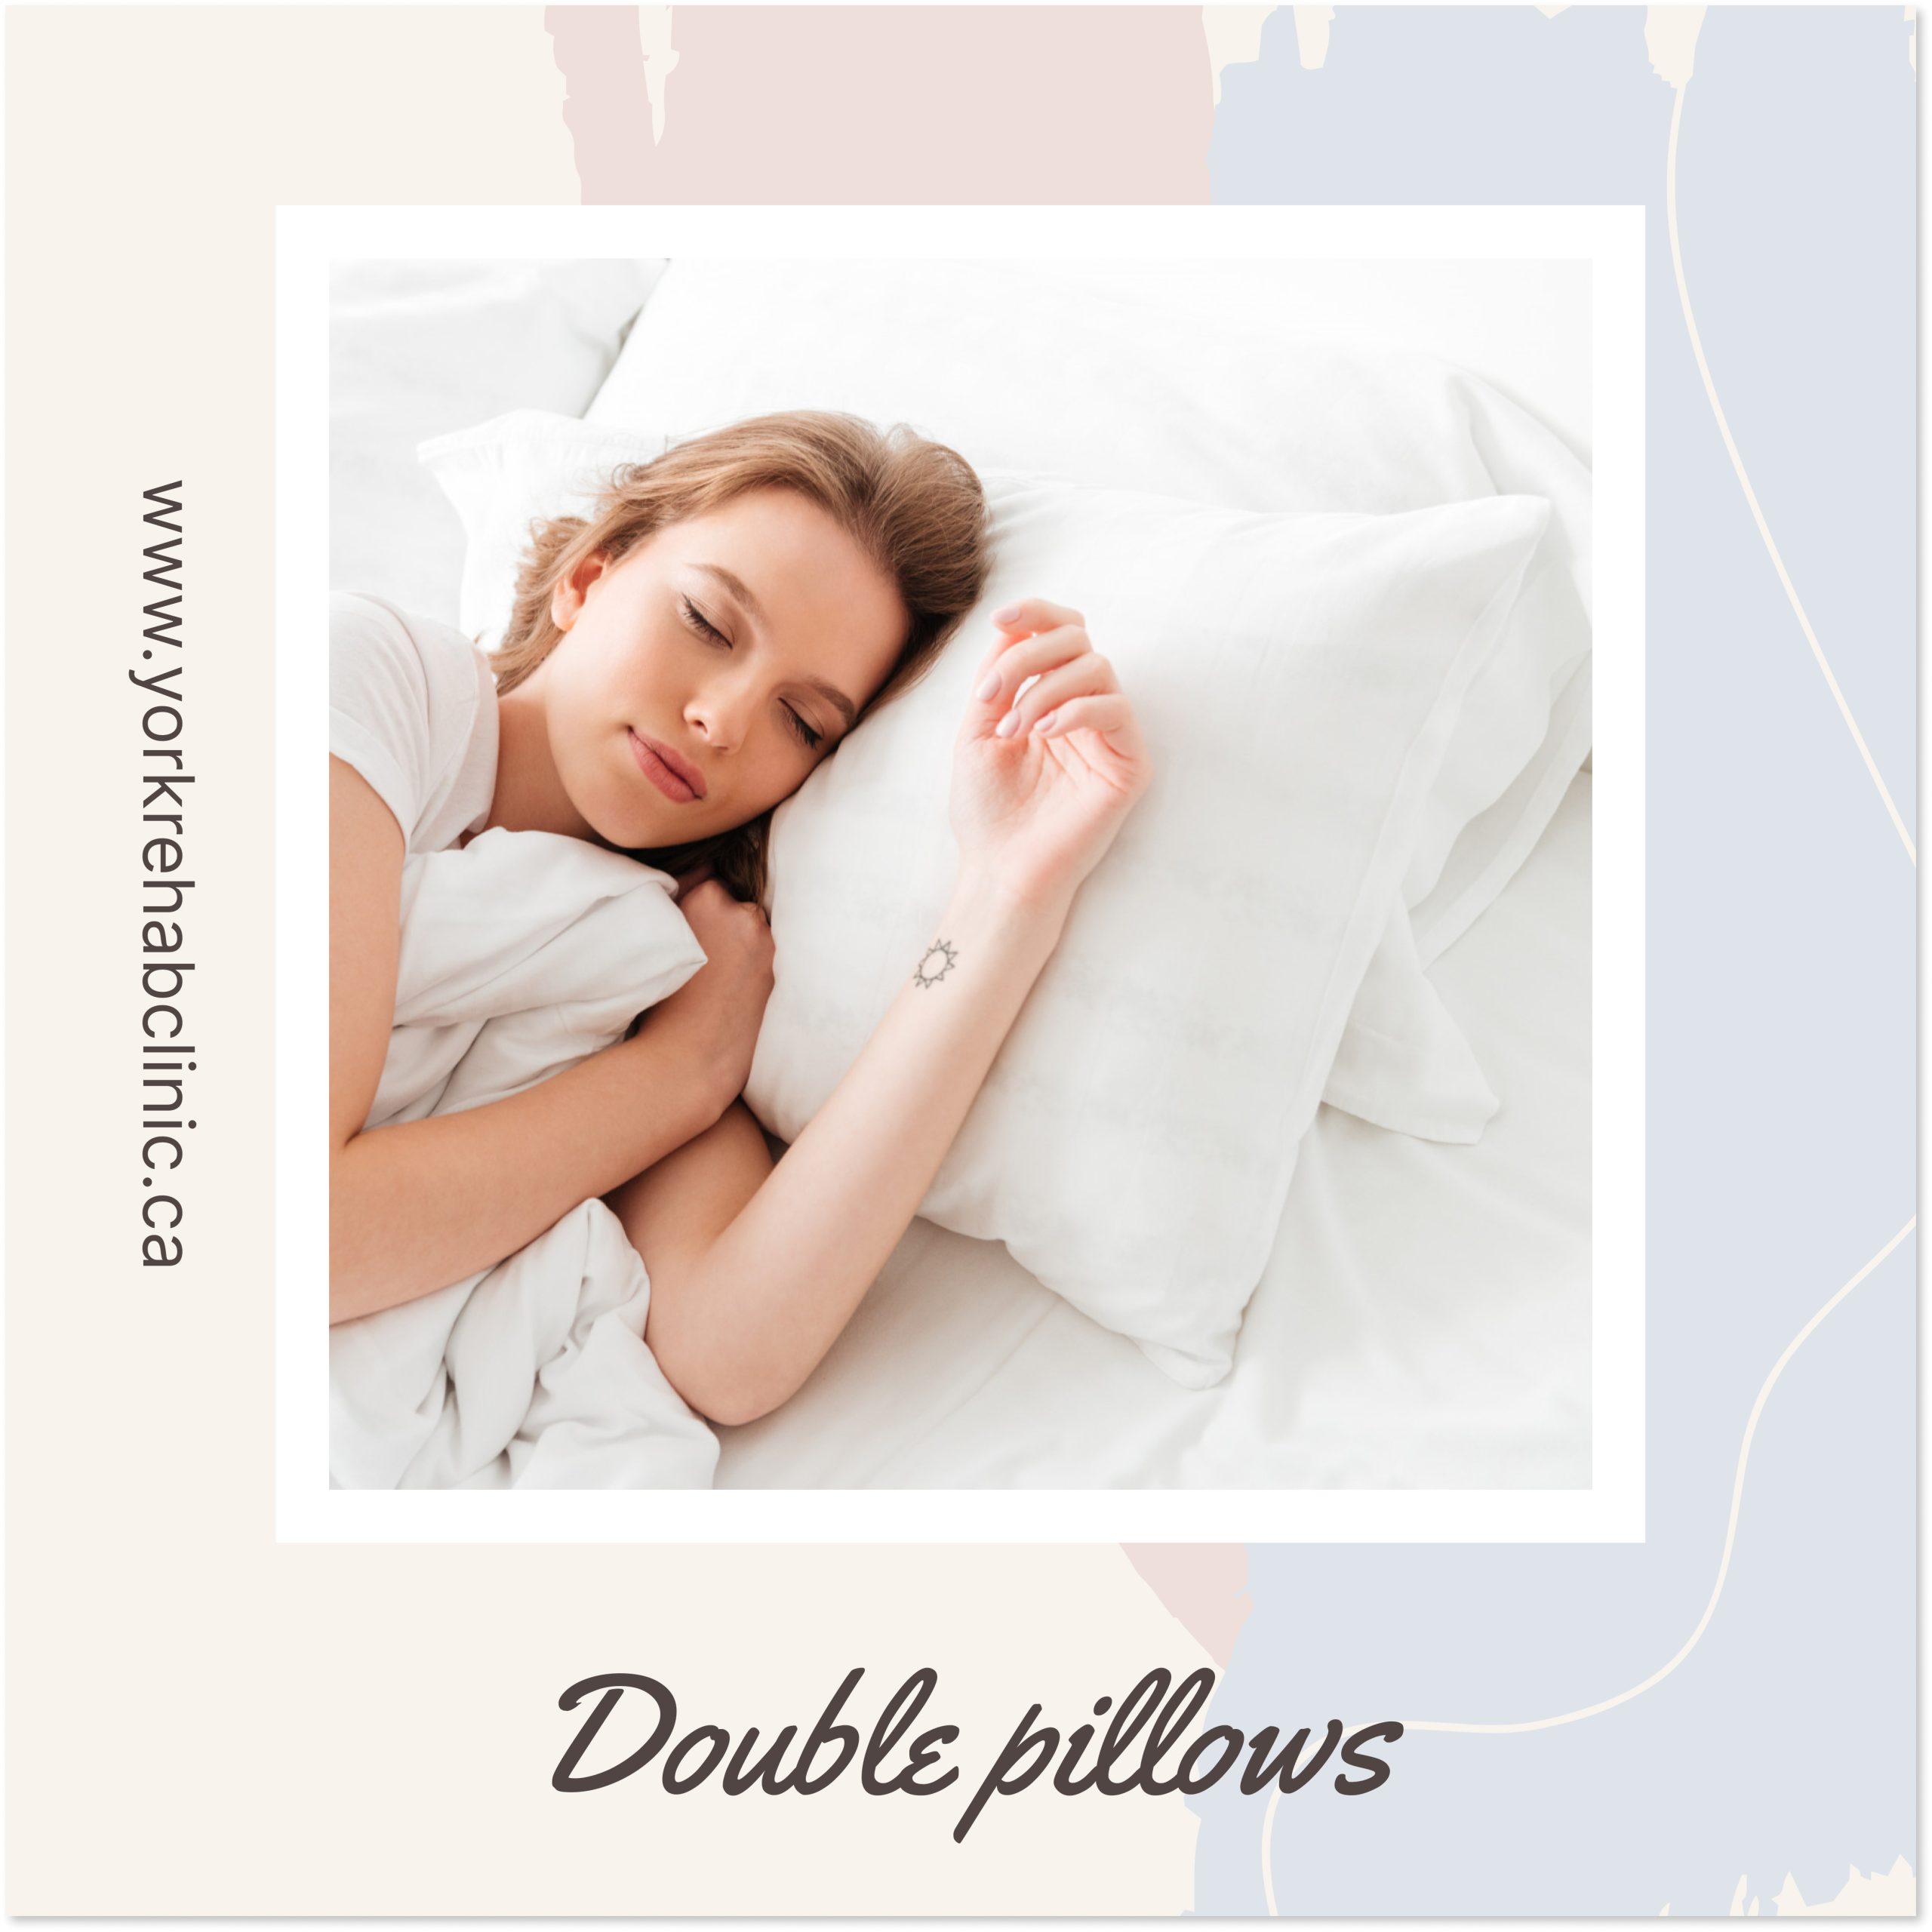 Double pillows